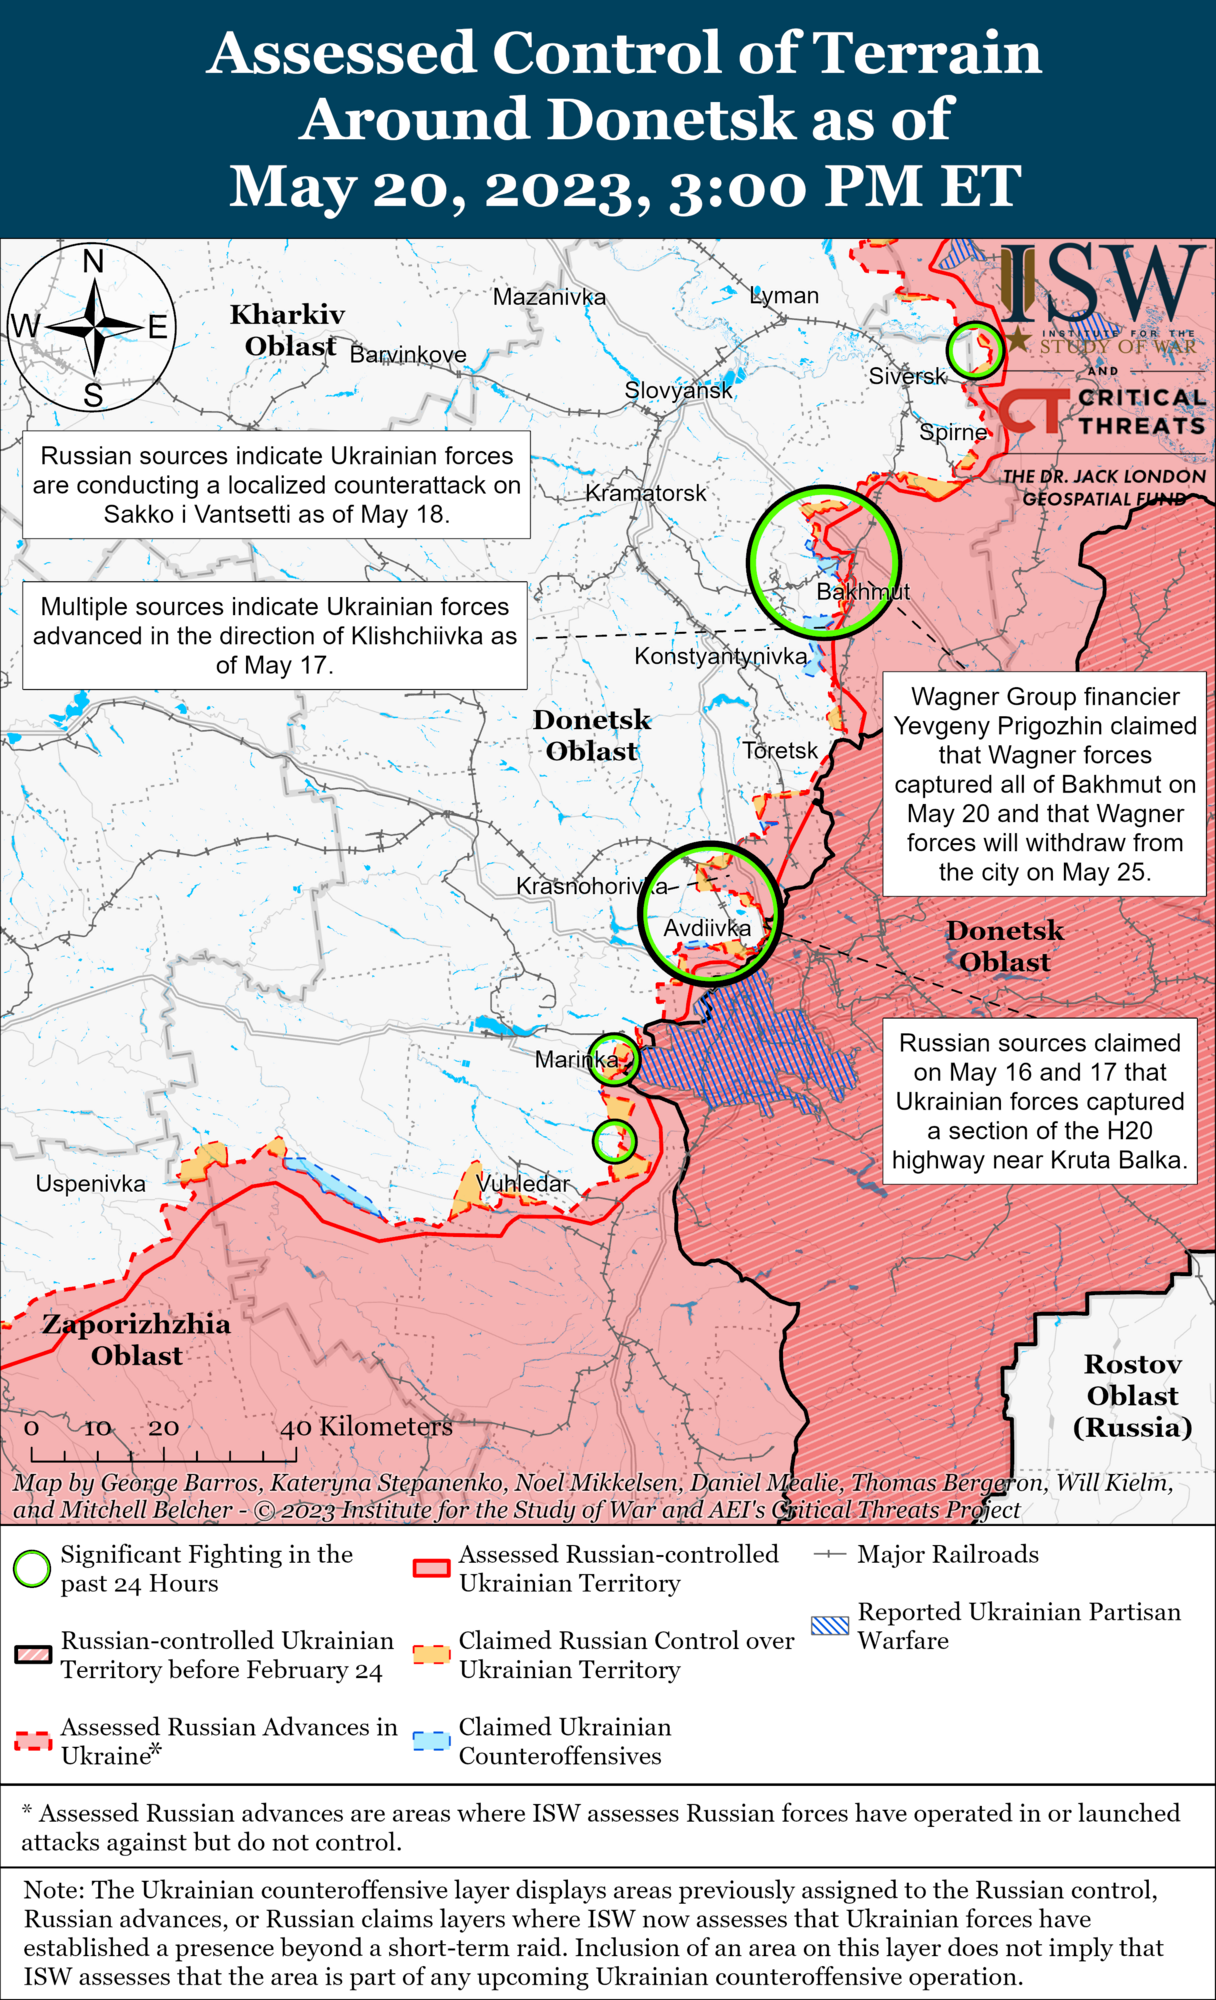 "Захоплення" кварталів Бахмута не дає армії РФ стратегічної переваги, Пригожин може вводити в оману – ISW